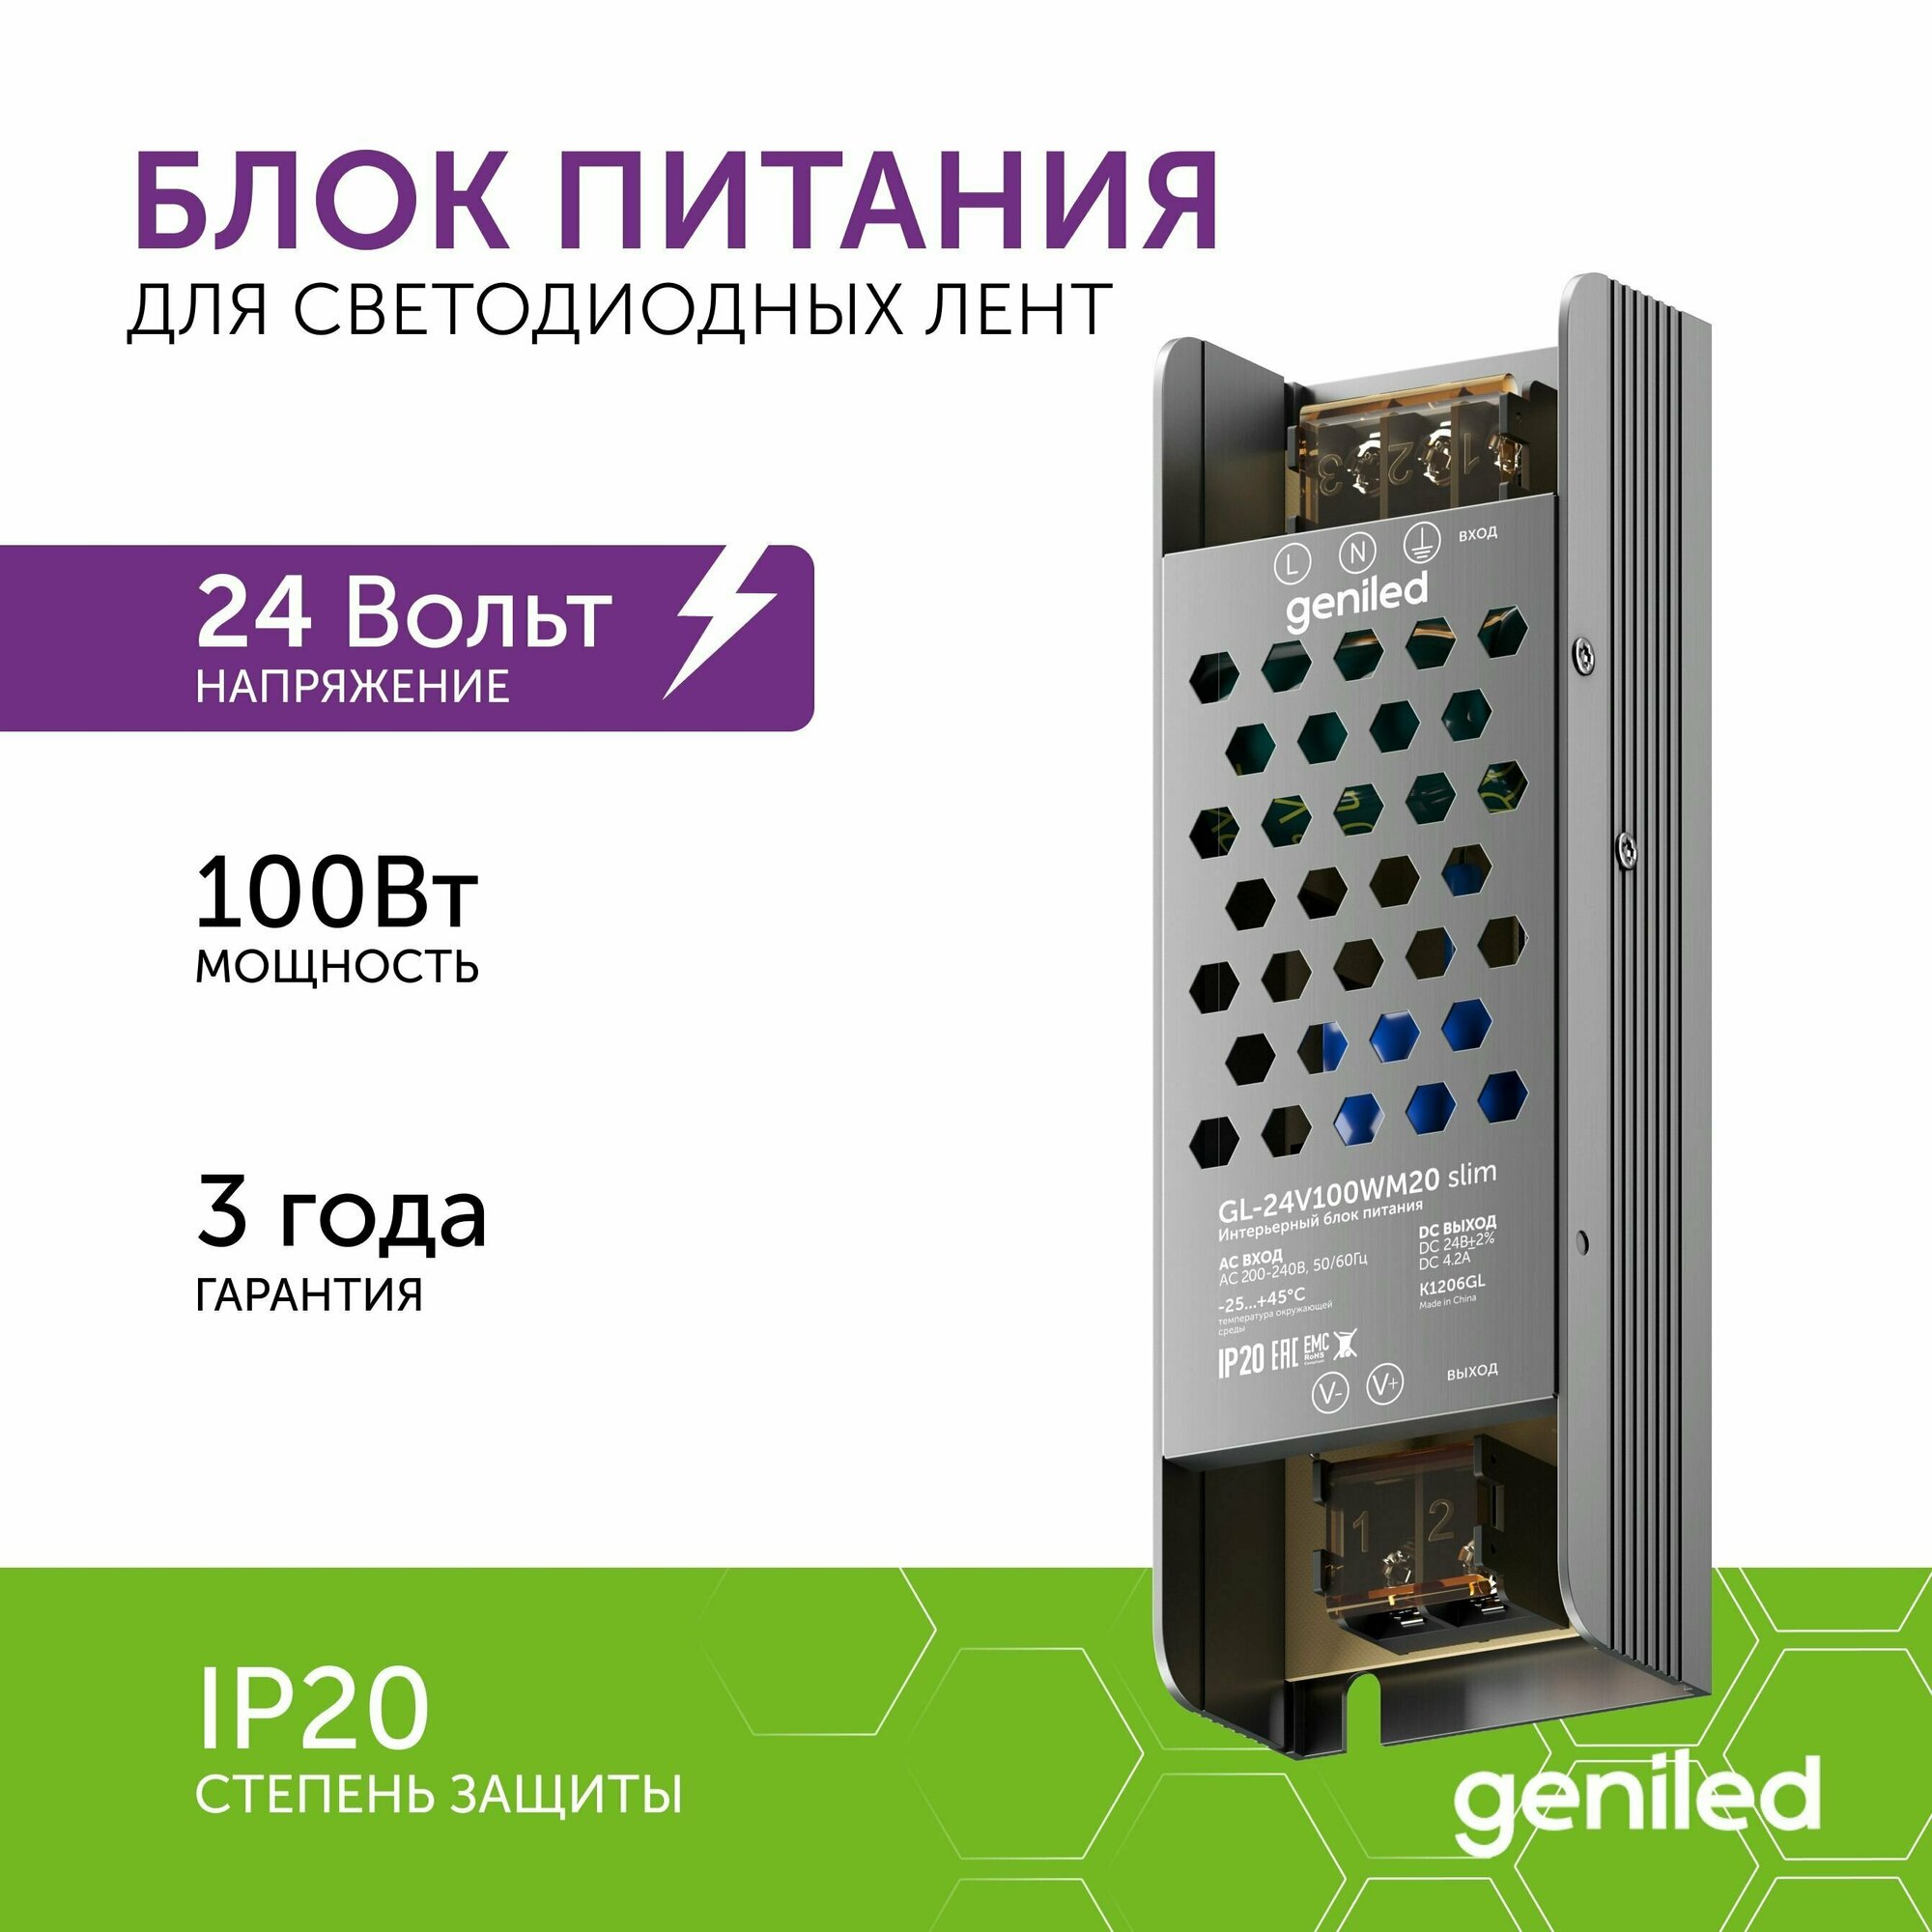 Блок питания Geniled GL-24V100WM20 slim - для светодиодной ленты / Мощность - 100 Вт / Вых. Напряжение - 24 В / Вых. Ток - 4,2 А / IP20